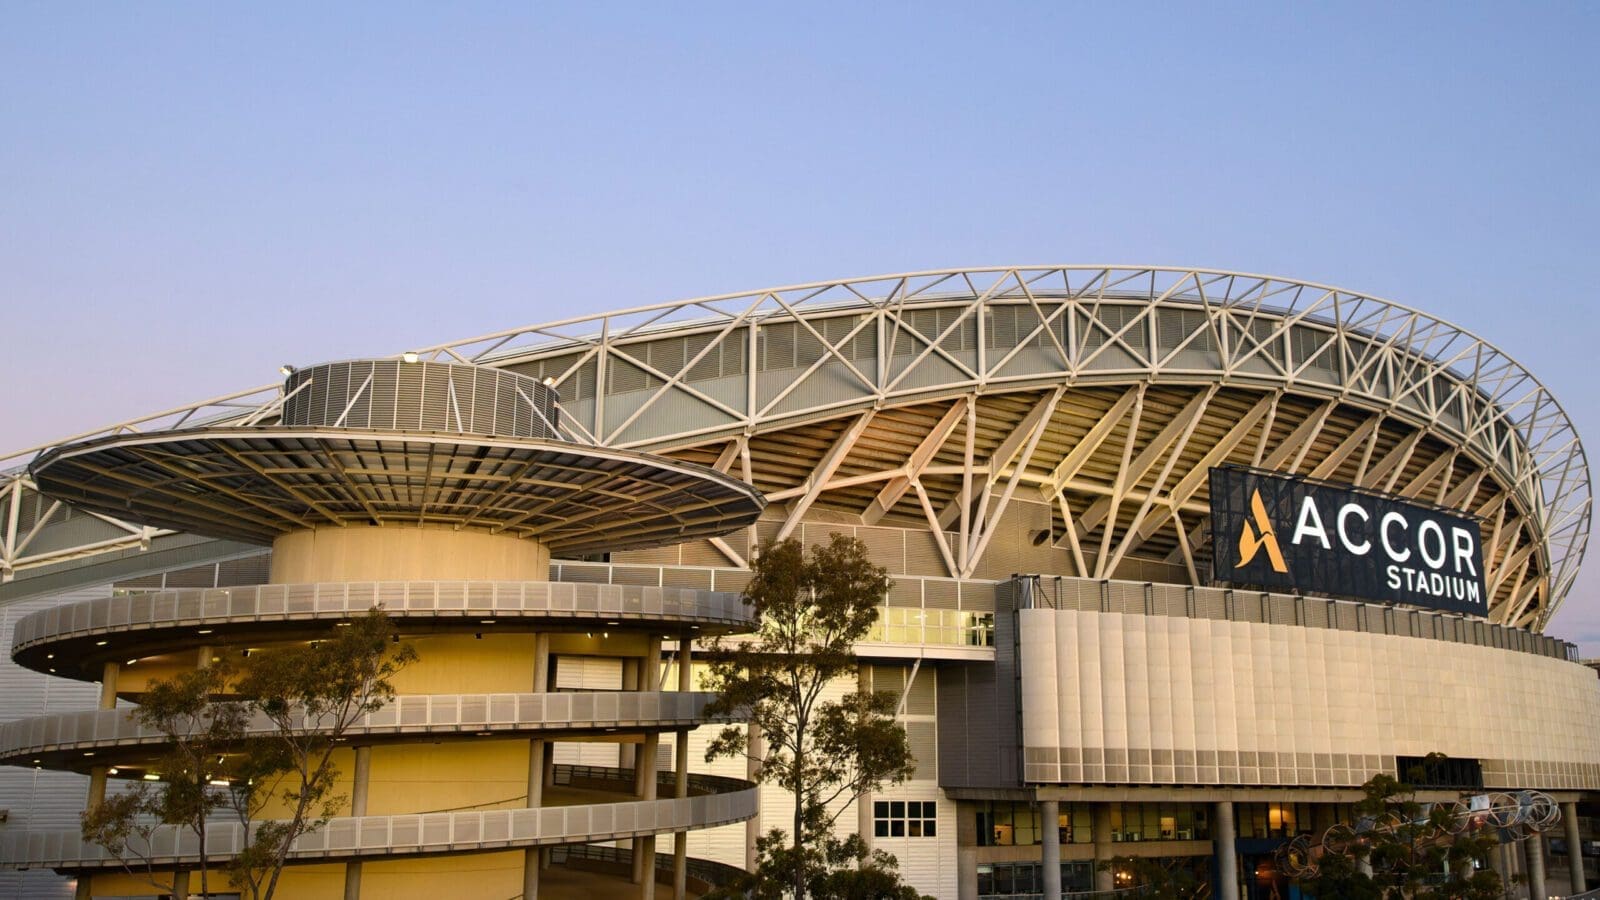 Stadium Australia Accor Sydney scaled